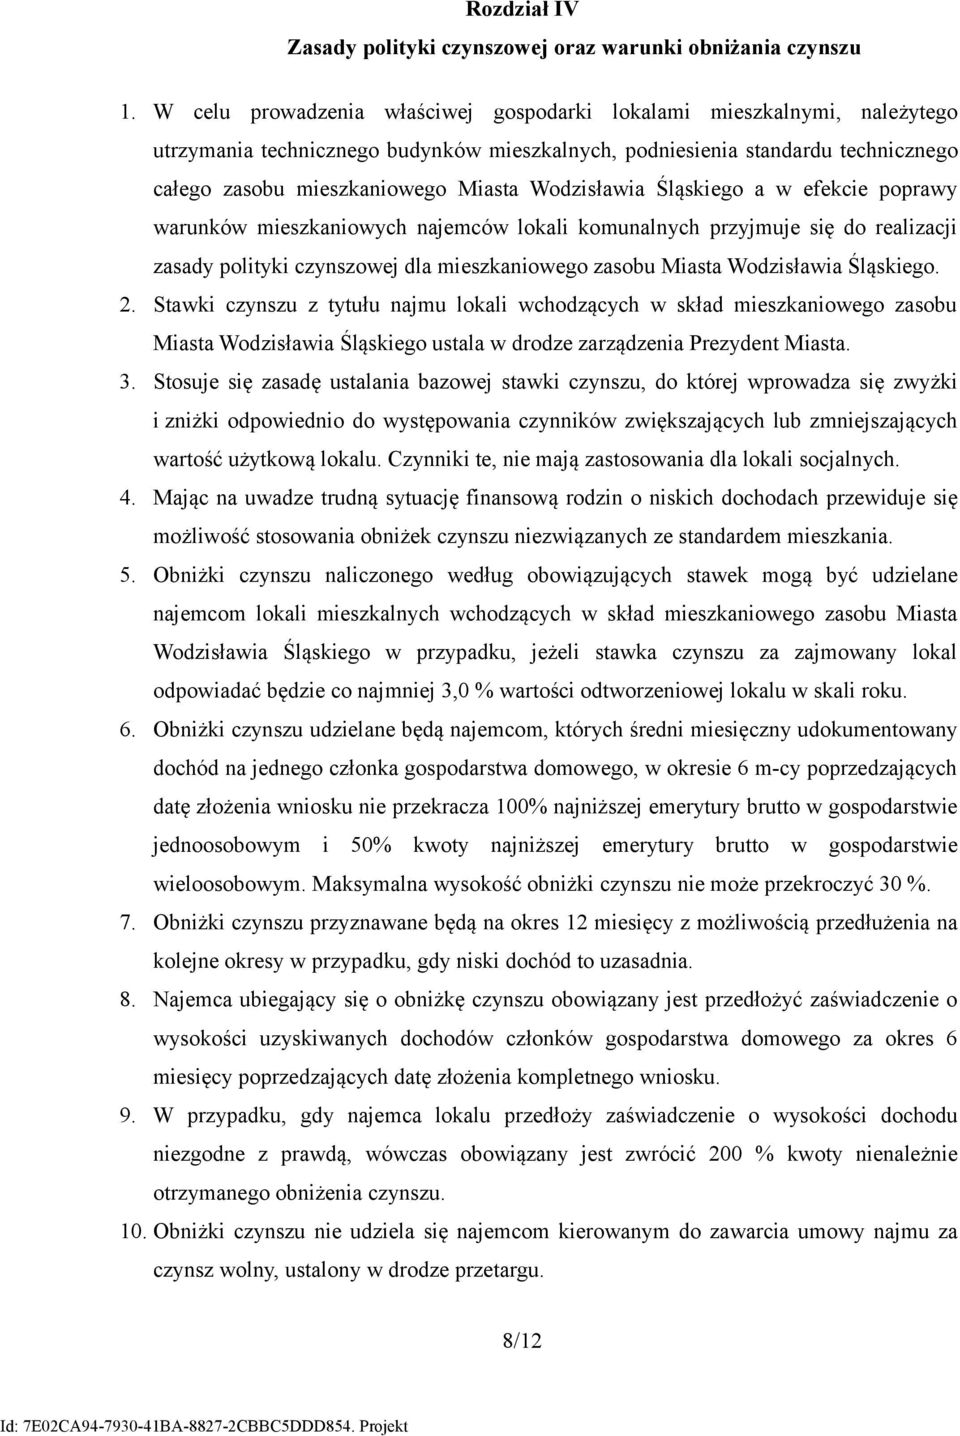 Wodzisławia Śląskiego a w efekcie poprawy warunków mieszkaniowych najemców lokali komunalnych przyjmuje się do realizacji zasady polityki czynszowej dla mieszkaniowego zasobu Miasta Wodzisławia